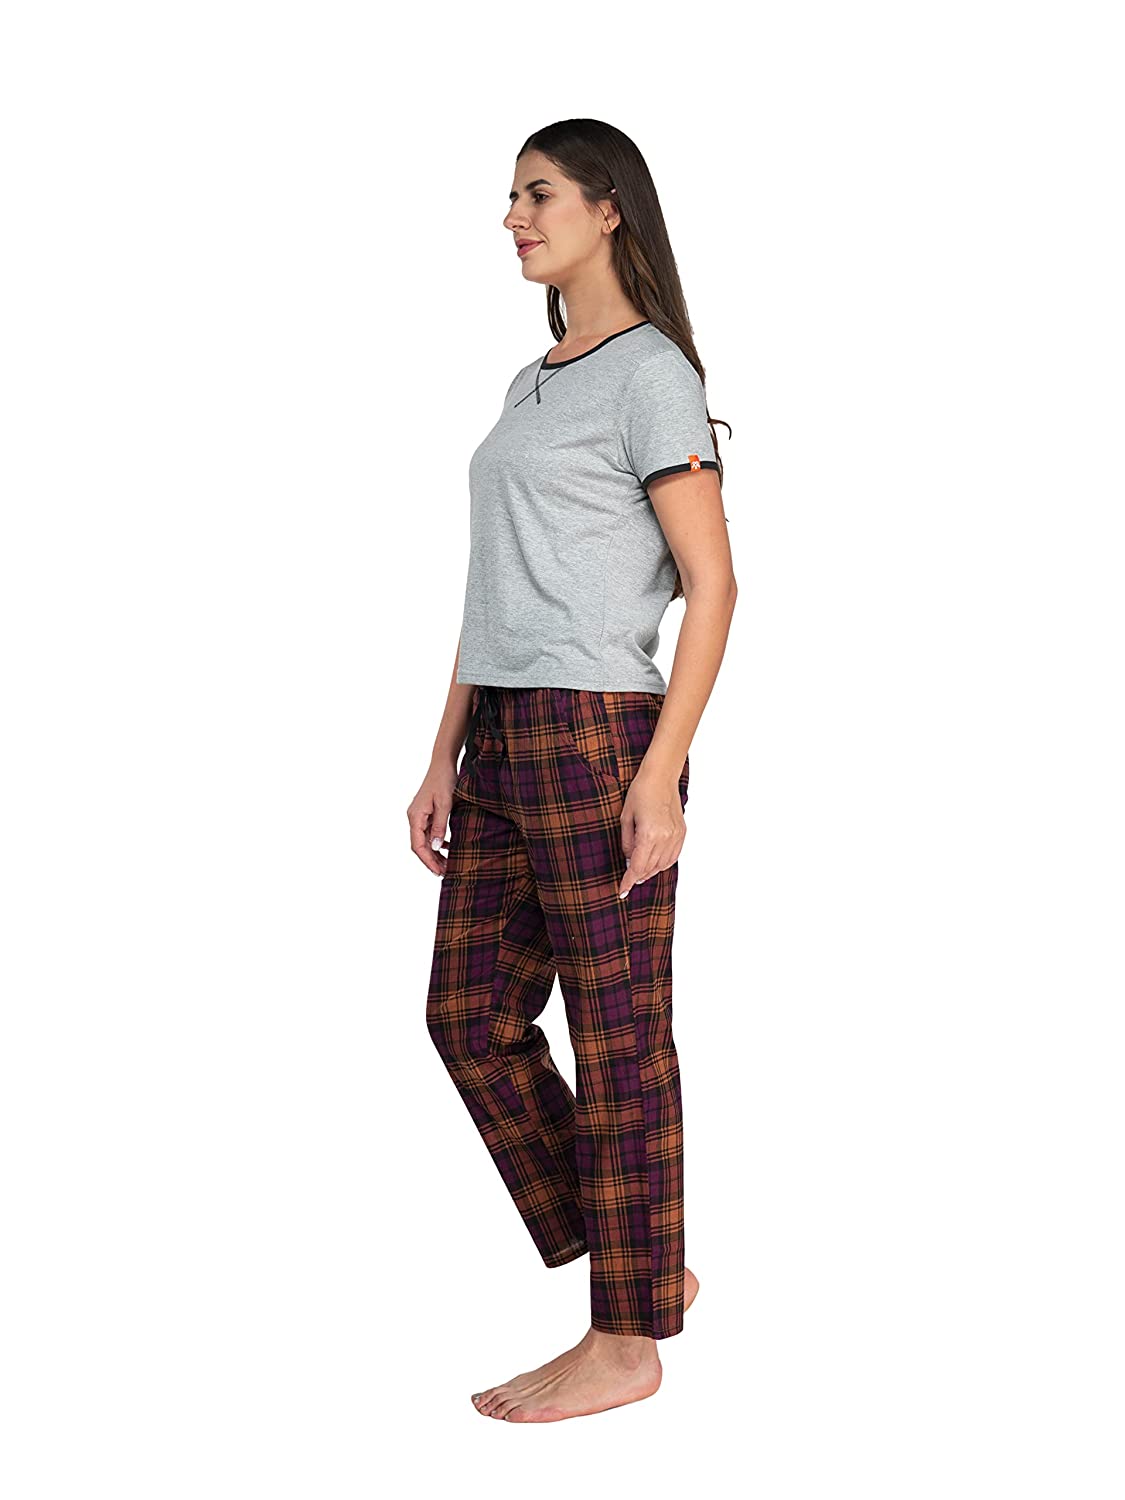 Women Baggy Side Slit Pants Ladies Autumn Loose Fit Solid Color Trousers  Plain | eBay